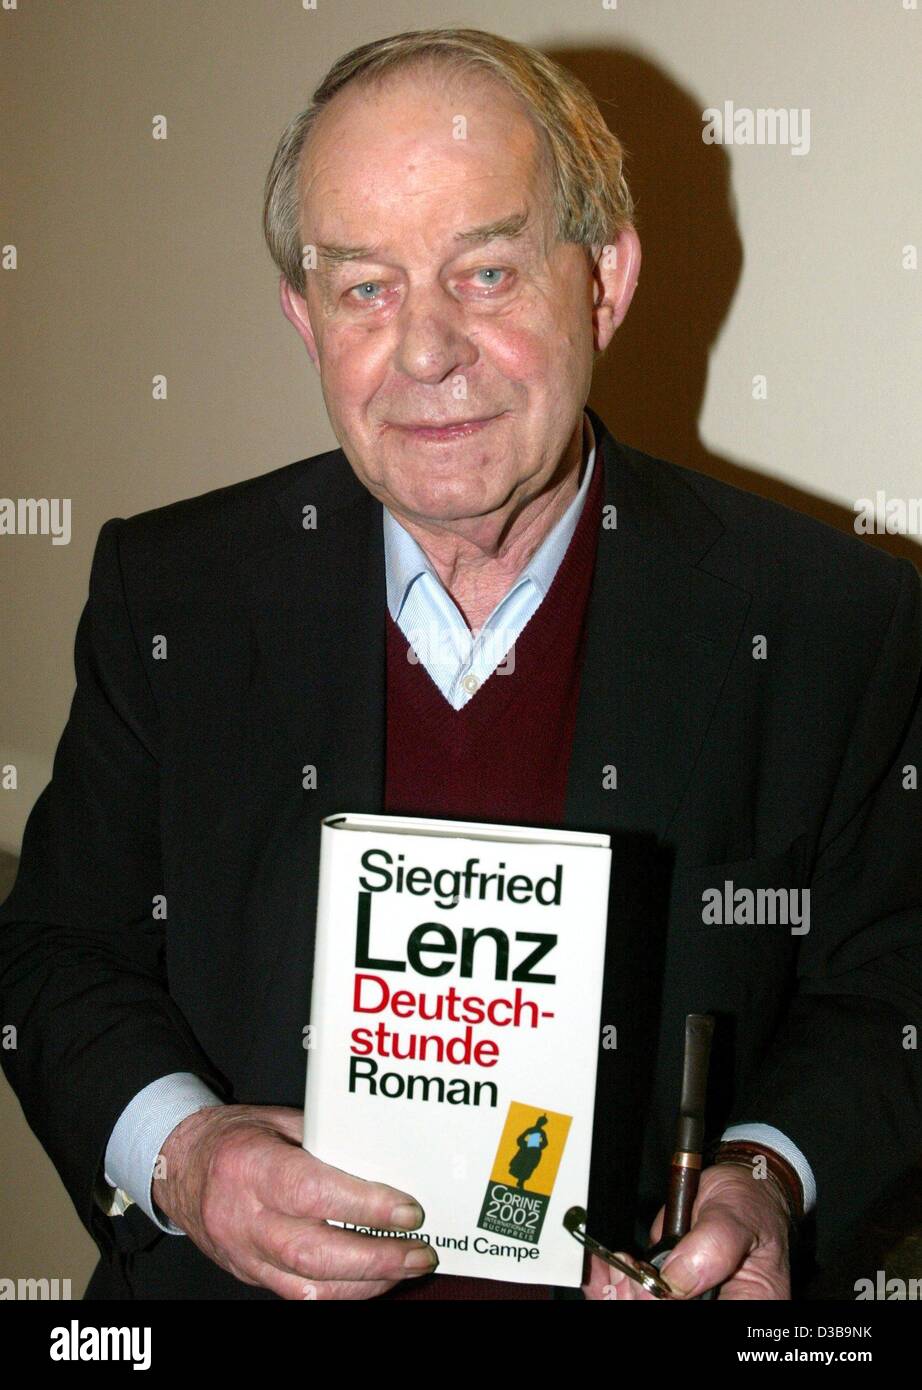 (Afp) - L'auteur allemand Siegfried Lenz pose avec une copie de son roman "eutschstunde' ('La Leçon allemande') au cours d'une conférence de presse à Munich, le 6 novembre 2002. Dans la soirée, Lenz se verra remettre le Prix international du livre eutschstunde 2002 Corine pour "'. Cette année, le prix est décerné à huit inte Banque D'Images